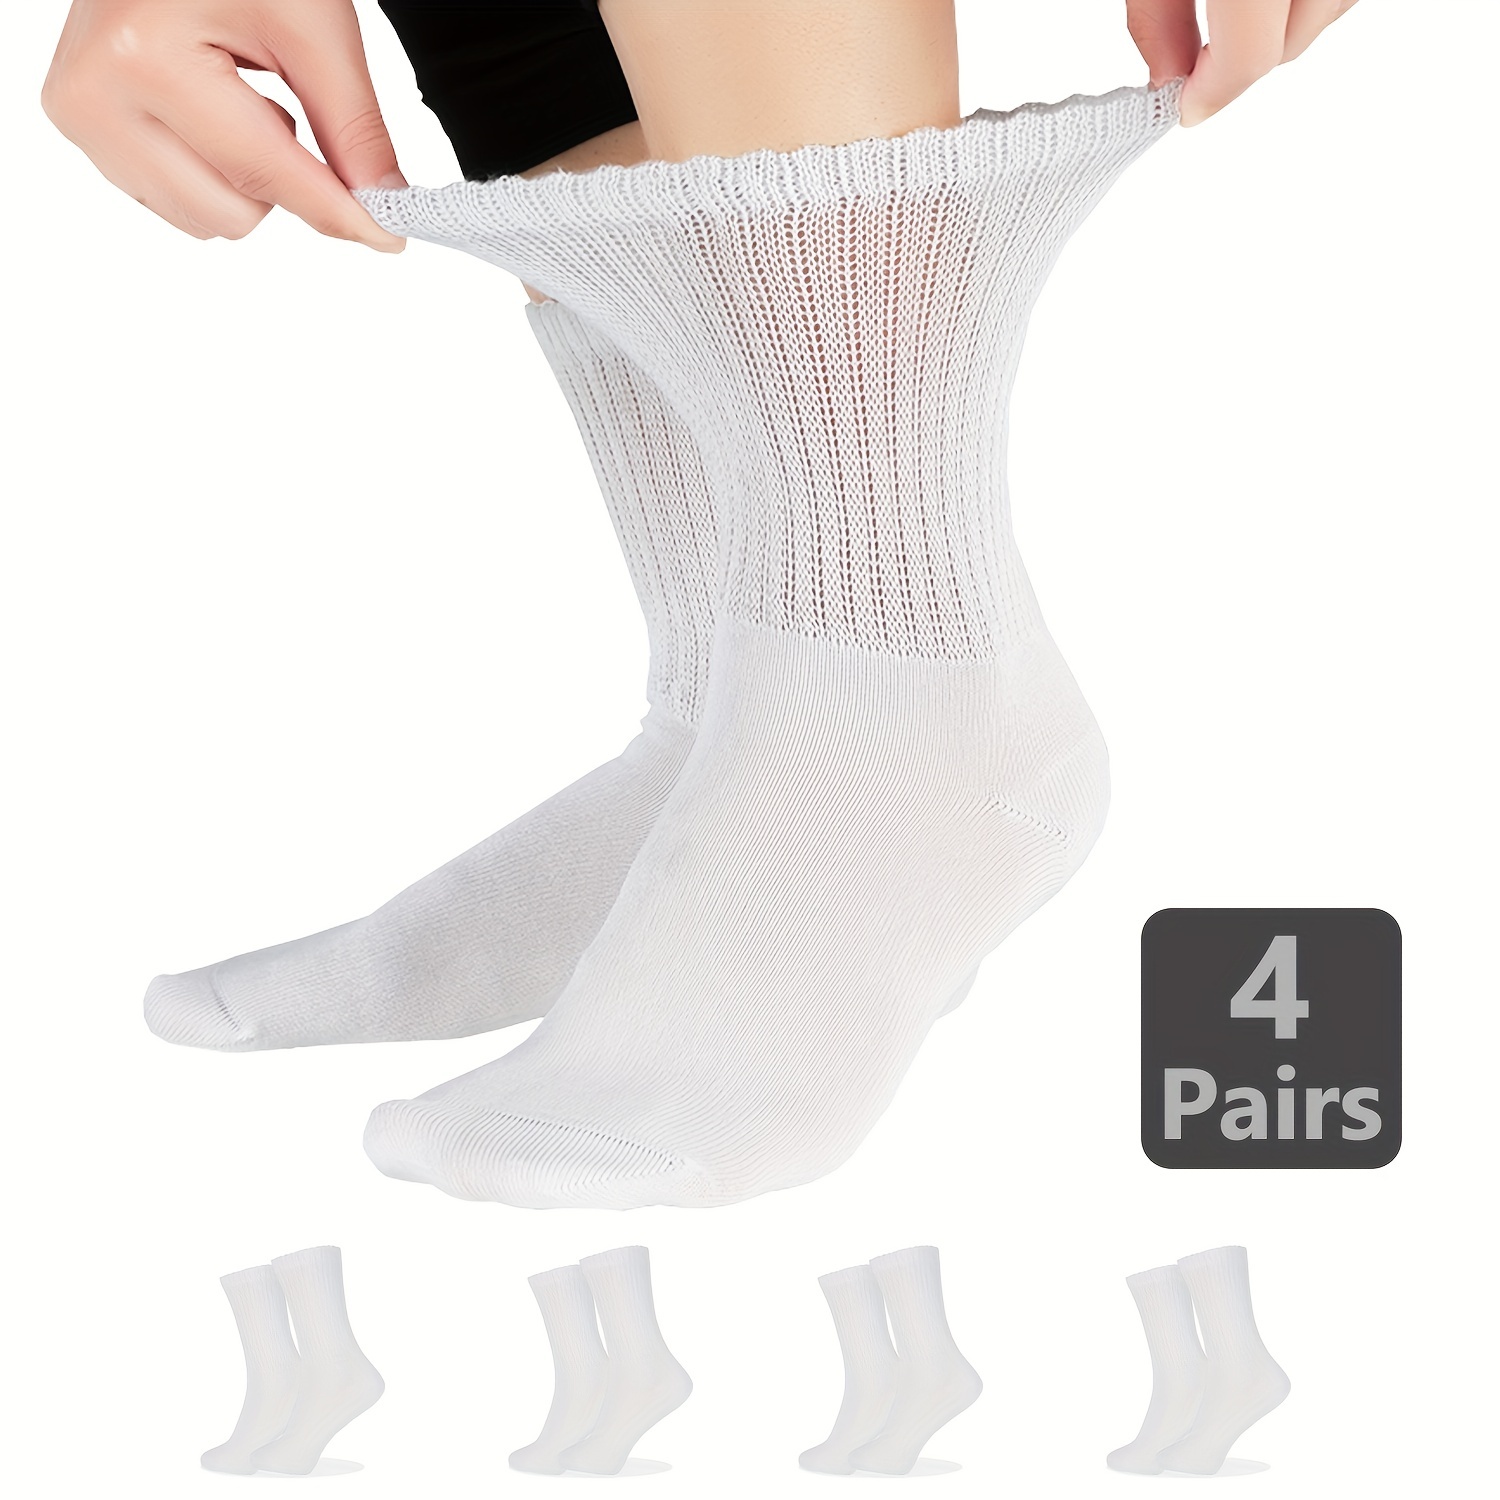 Yomandamor 6 pares de calcetines de bambú para diabéticos para mujer, con  parte superior no atada y suela acolchada, L (tamaño de los calcetines